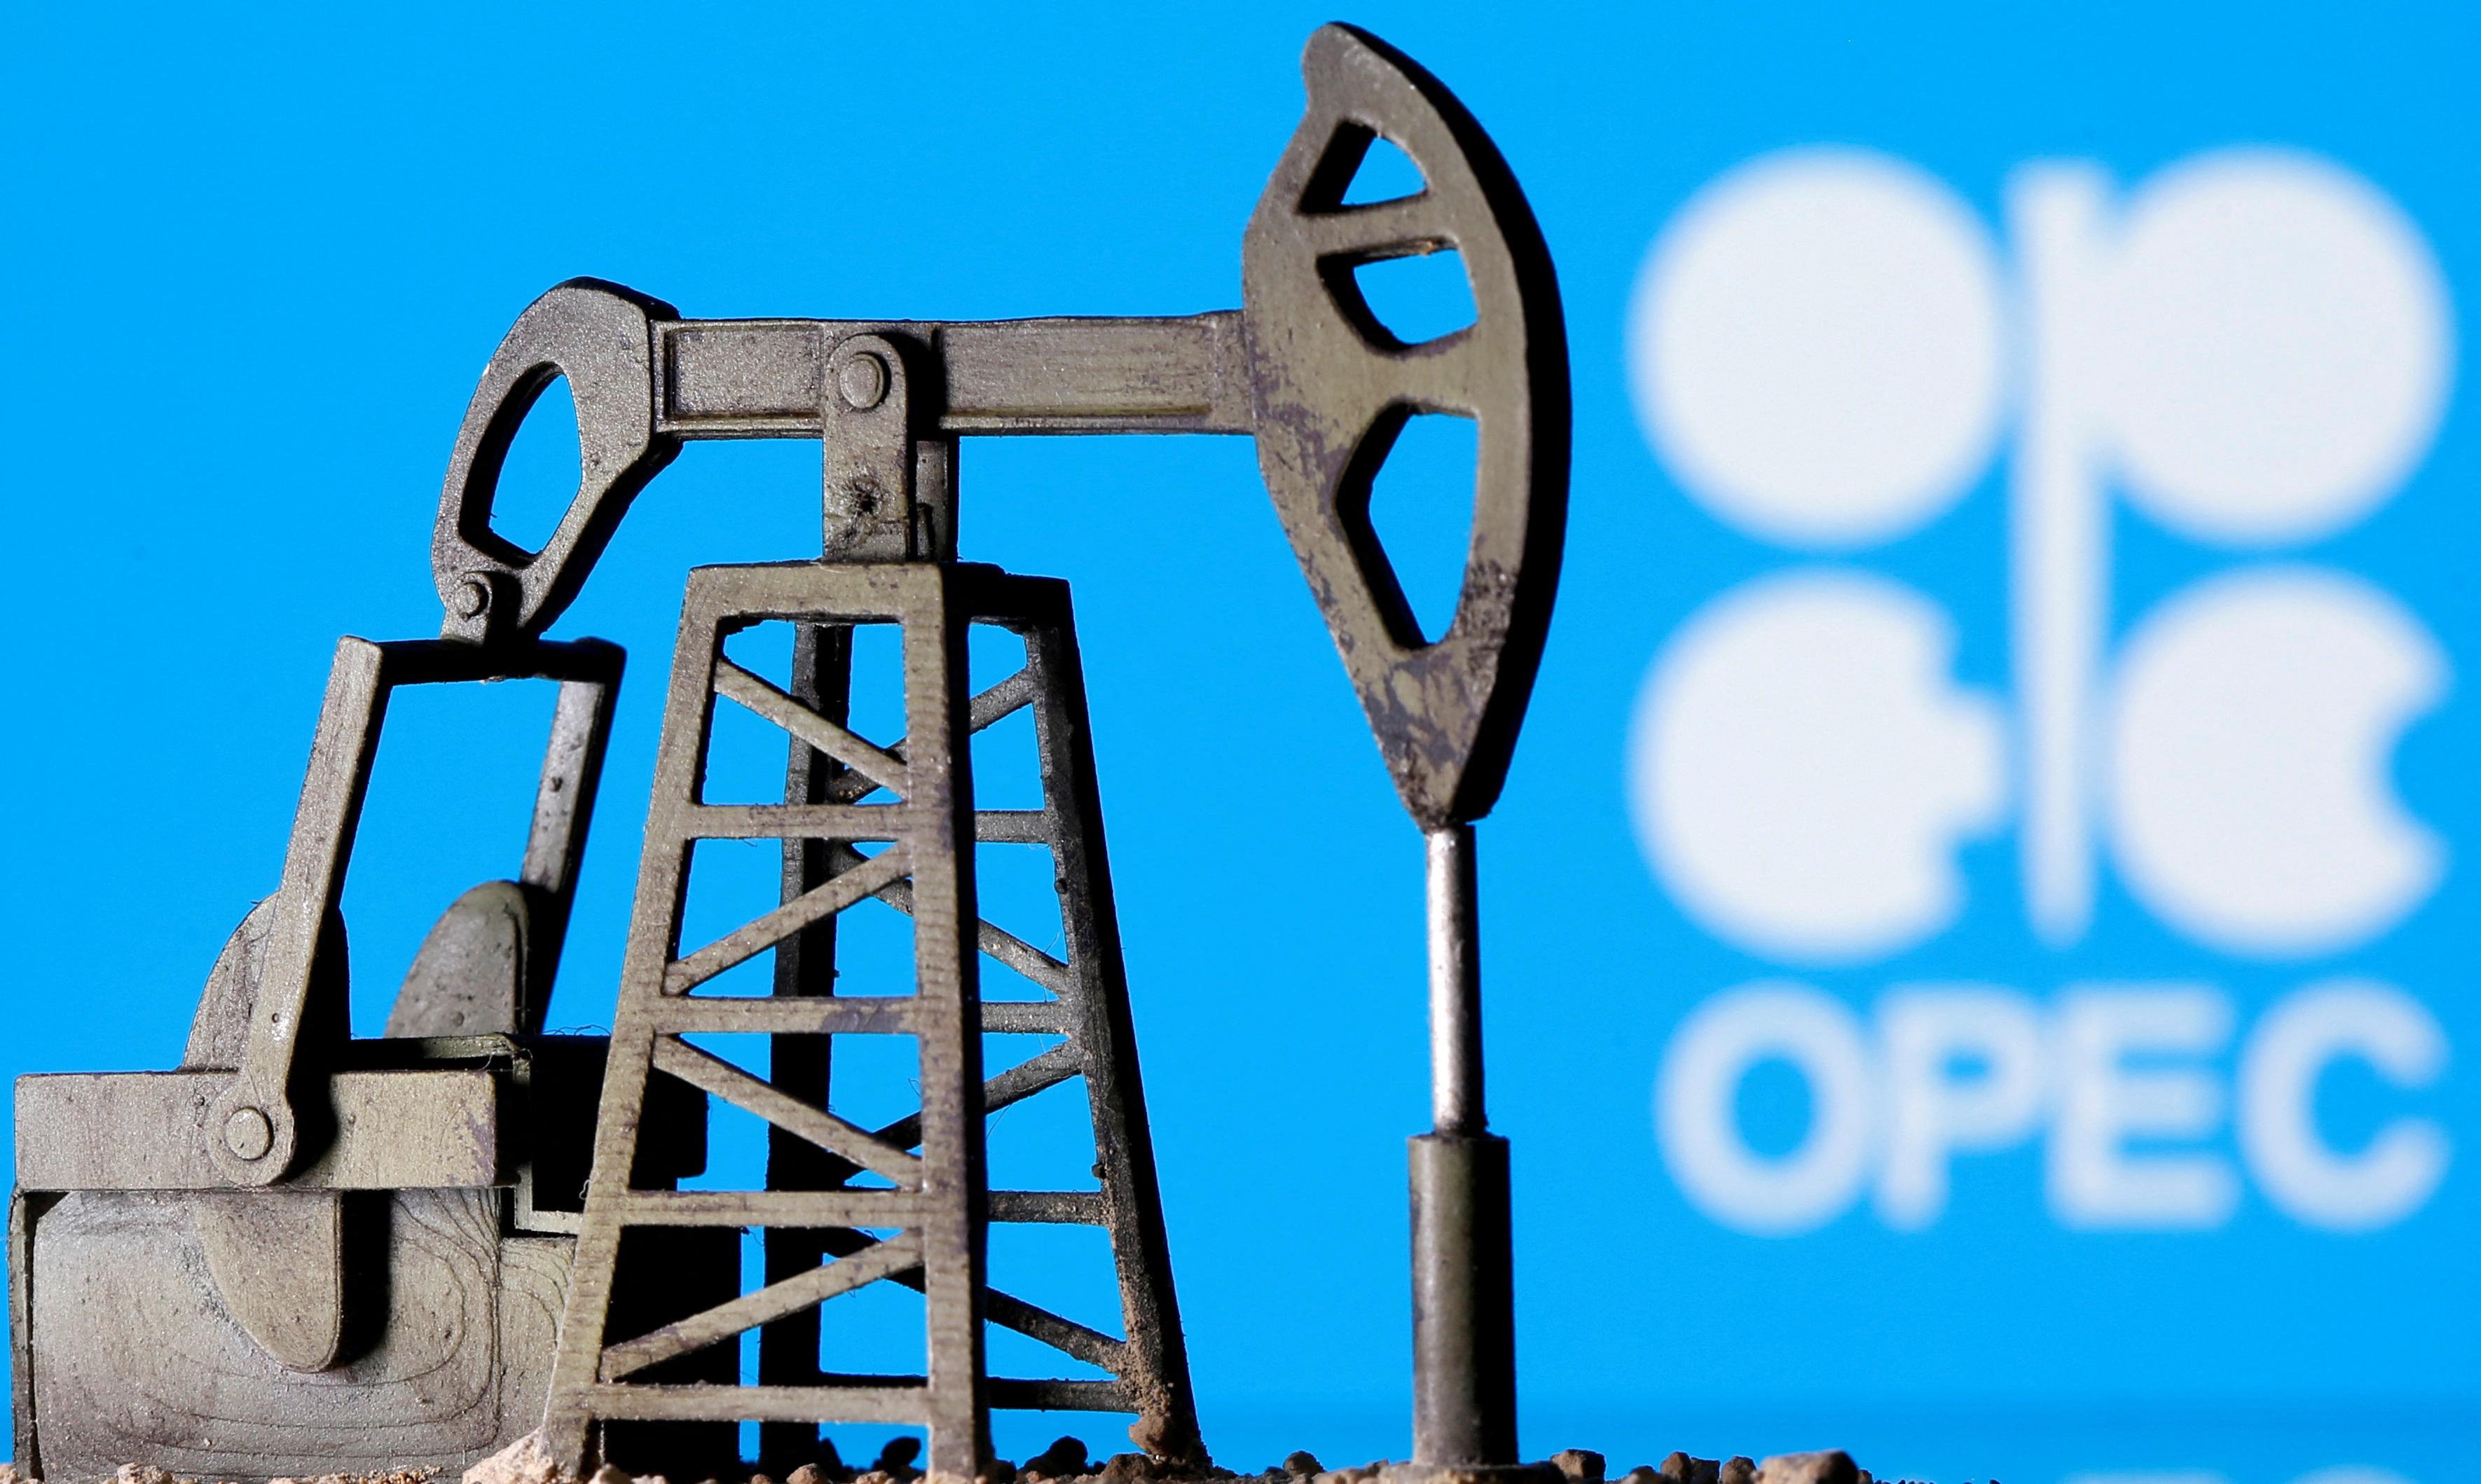 שקע משאבת שמן מודפס בתלת מימד מול הלוגו של OPEC בתמונת איור זו